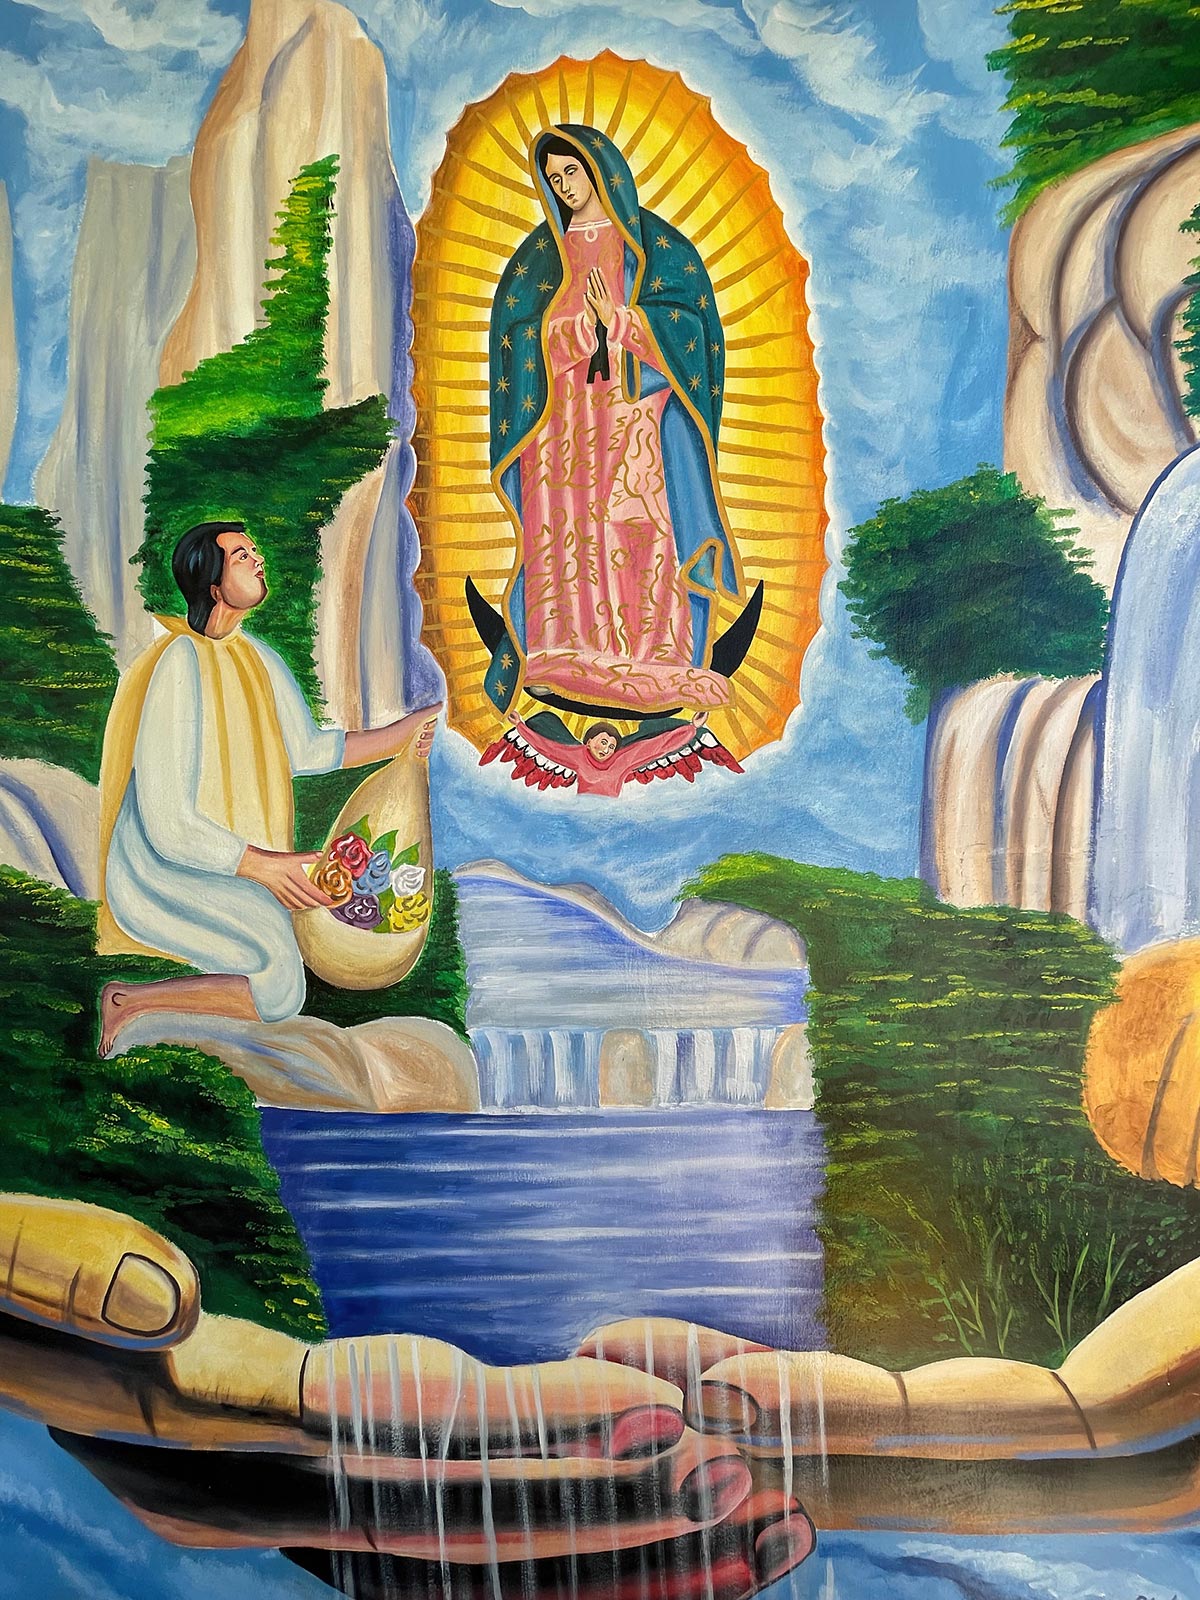 لوحة لخوان دييغو وظهور مريم ، كنيسة غوادالوبي ، سان كريستوبال